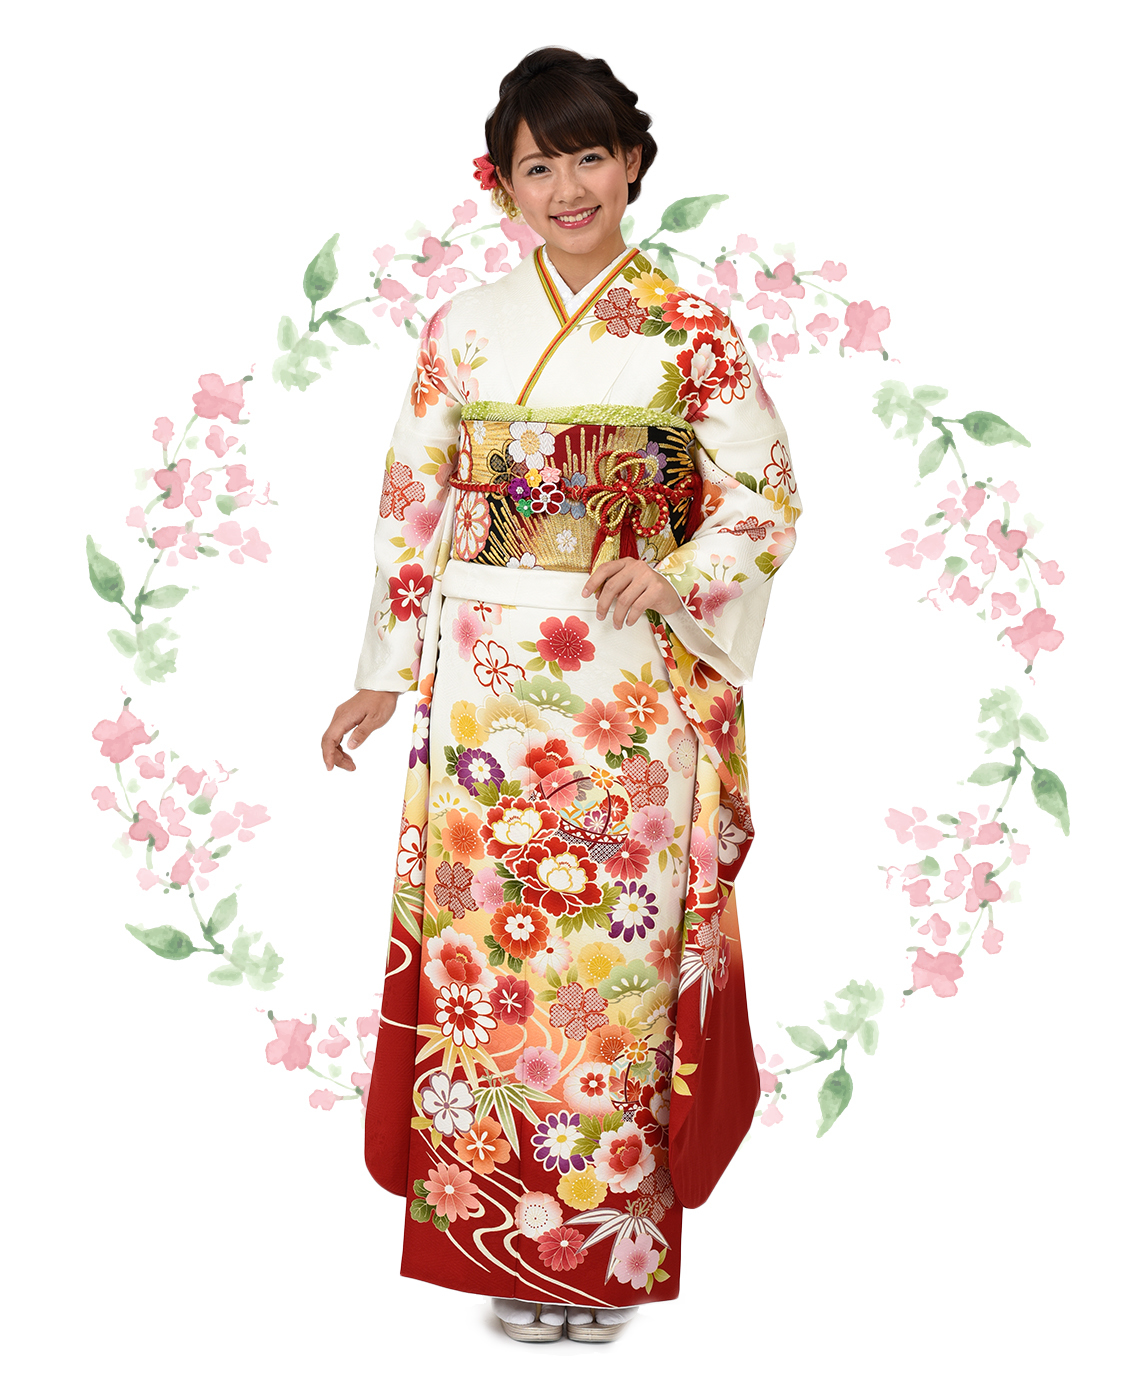 赤地に愛らしい桜と毬柄振袖【MKK-2905】 / まるやま・京彩